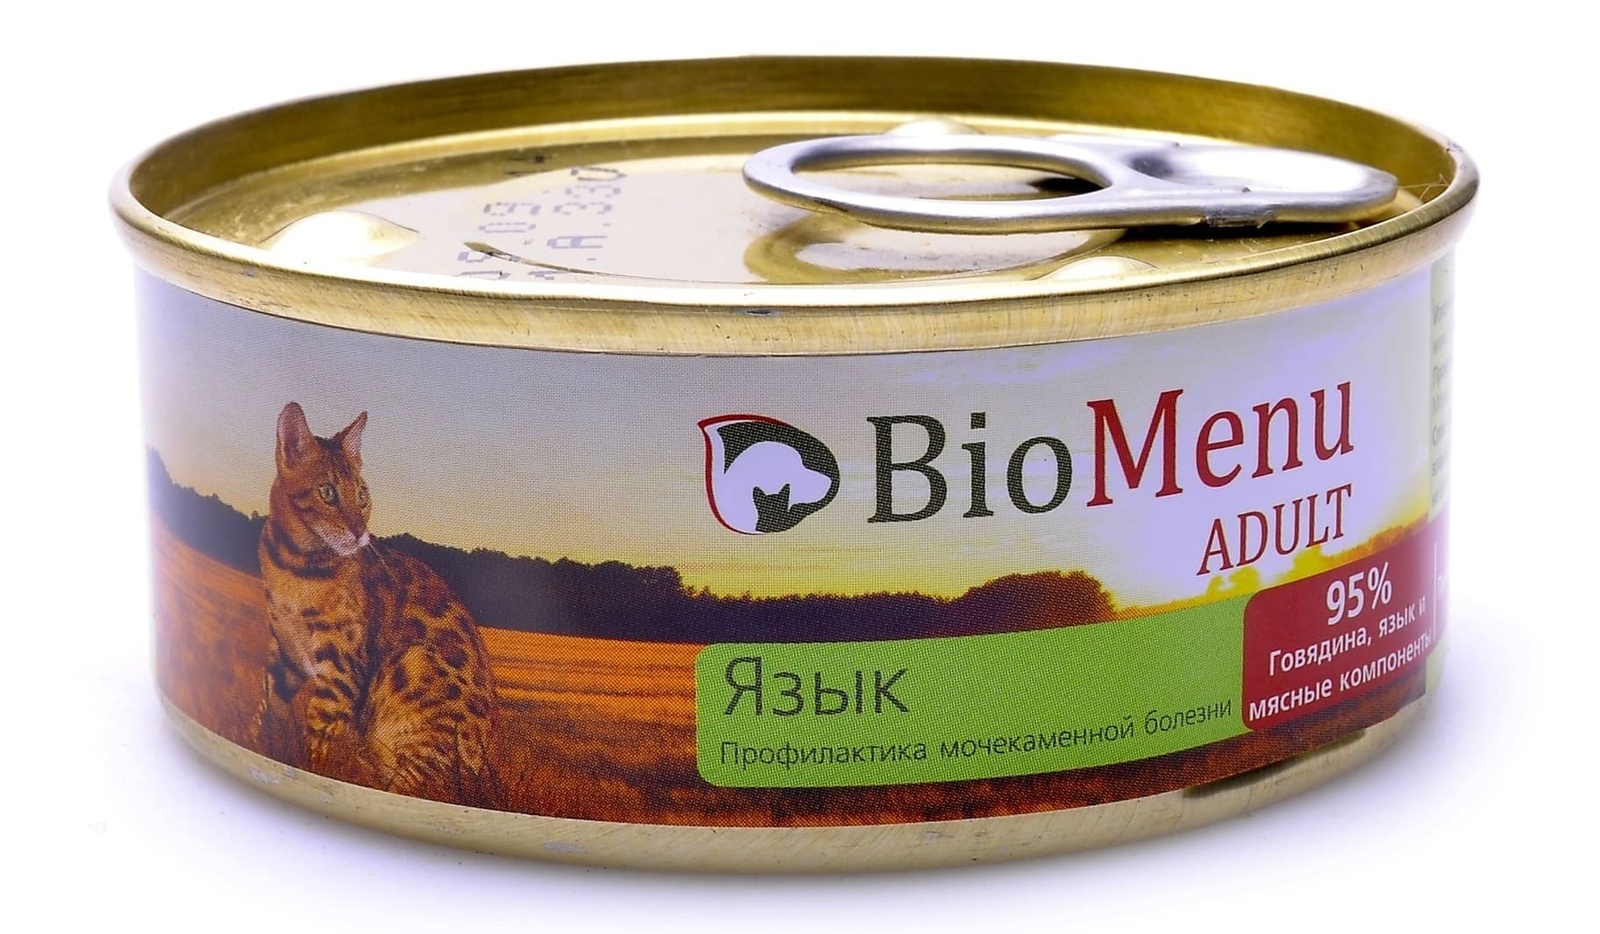 BioMenu BioMenu паштет для кошек, с языком (100 г) консервы biomenu sensitive для кошек мясной паштет с перепелкой 95% мясо 100 г